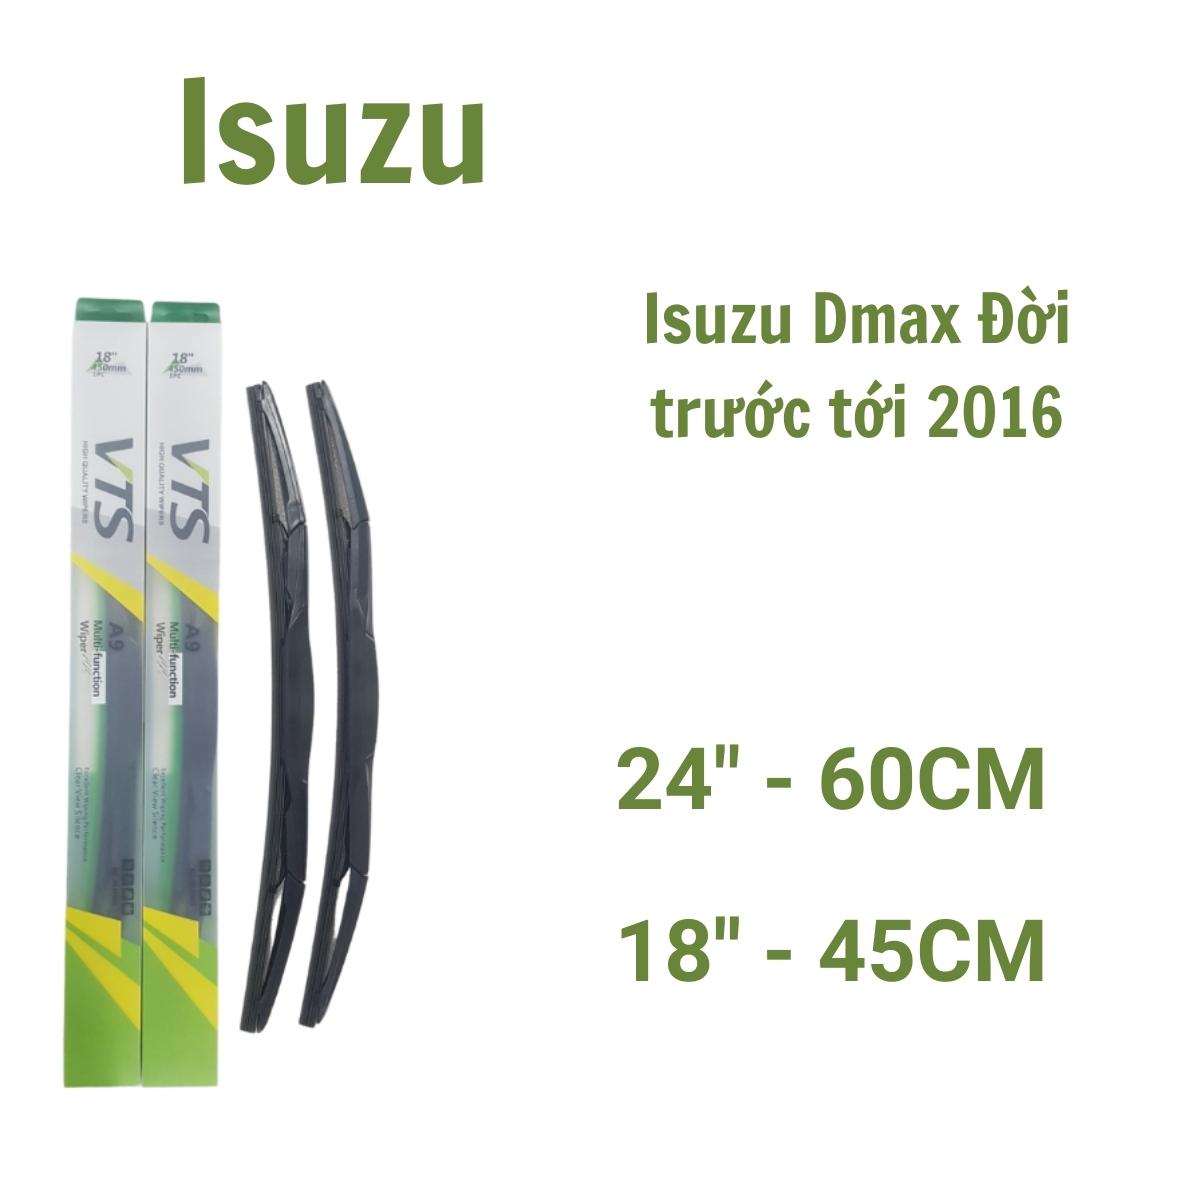 Cần gạt mưa ô tô thanh mềm A9 dành cho xe Isuzu: Dmax, Mux - Hàng nhập khẩu